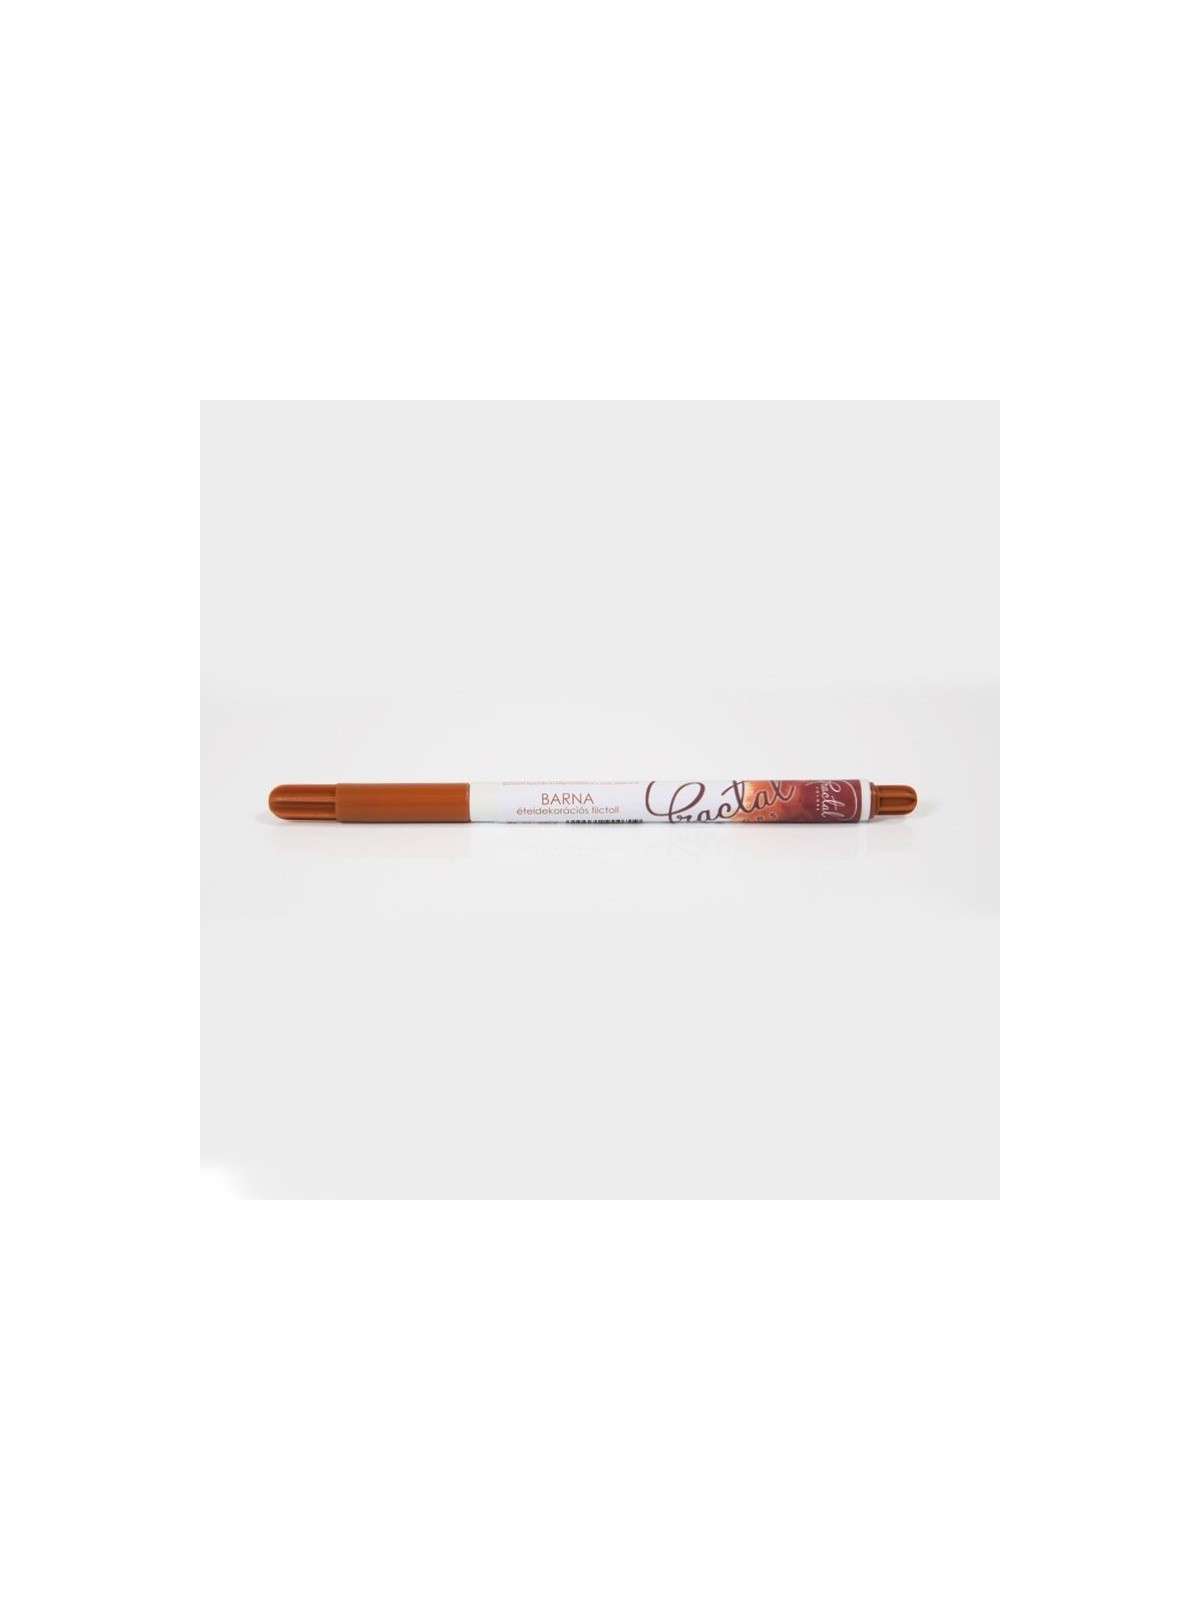 Zucker Art Bleistift Fractal - Brown, Barna (1,3 g)